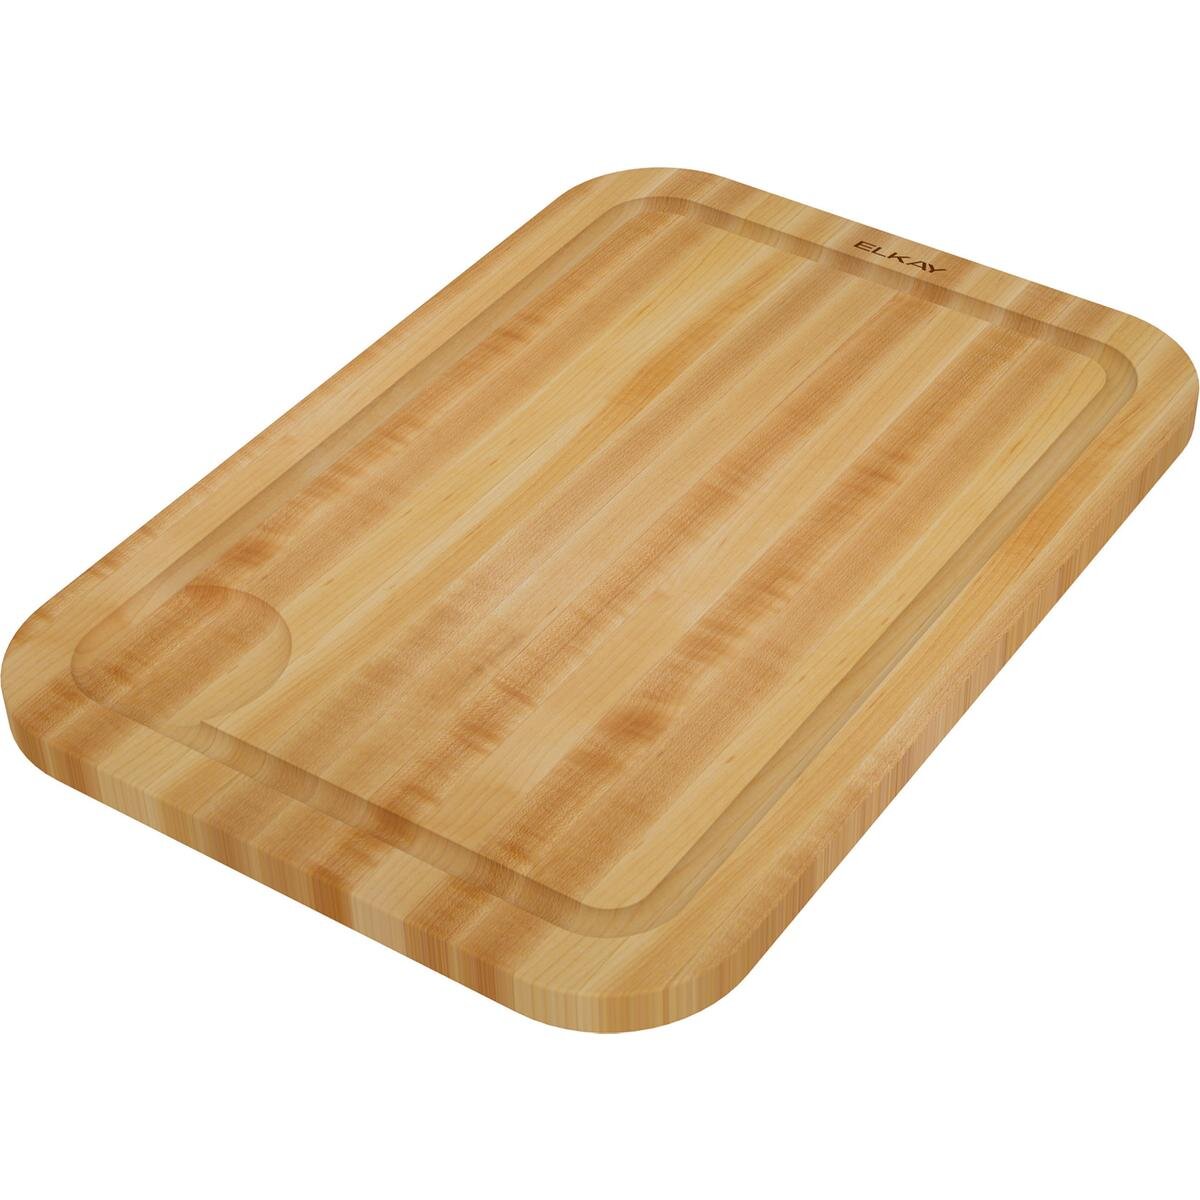 Elkay Dark Maple Solid Wood Cutting Board